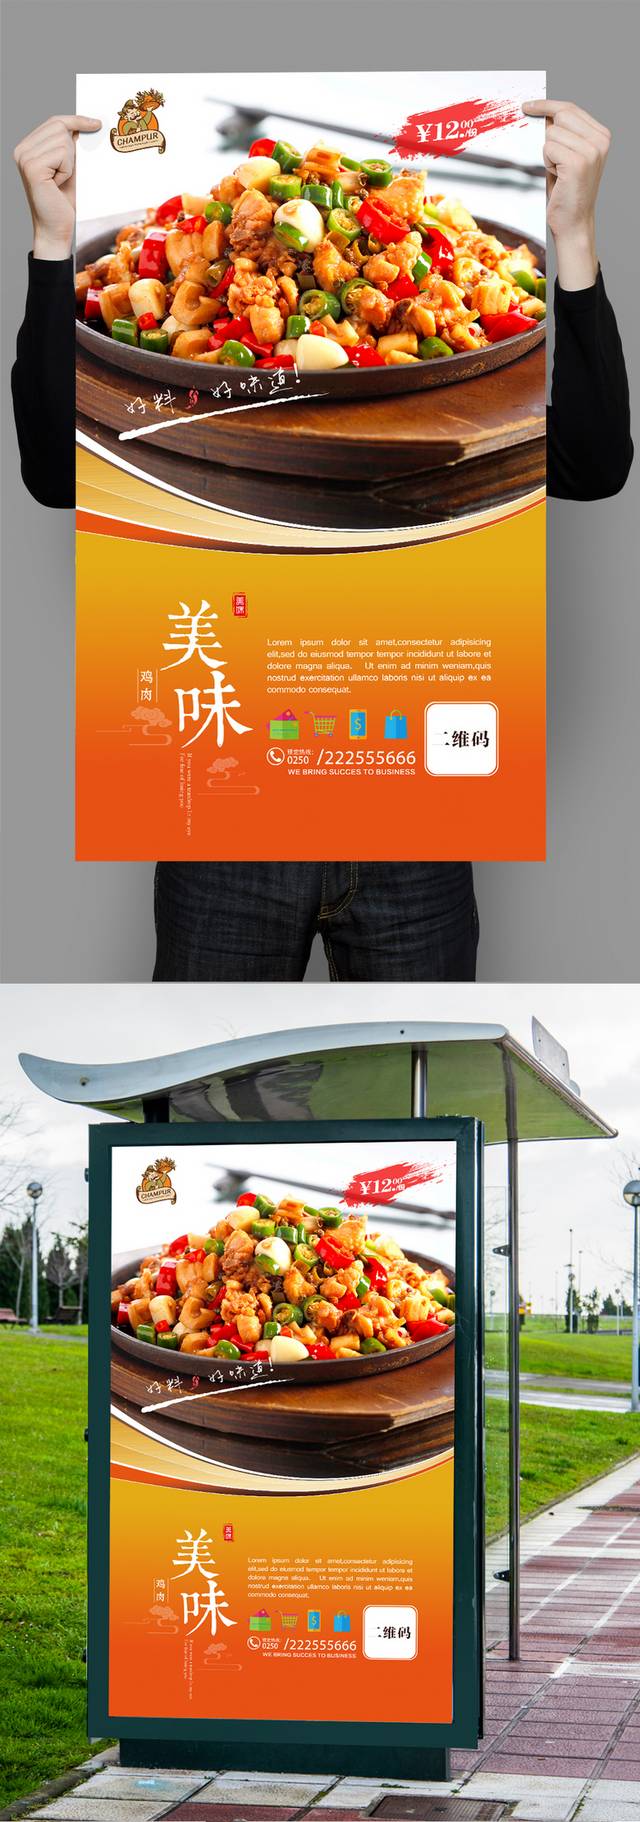 尖椒鸡宣传海报设计